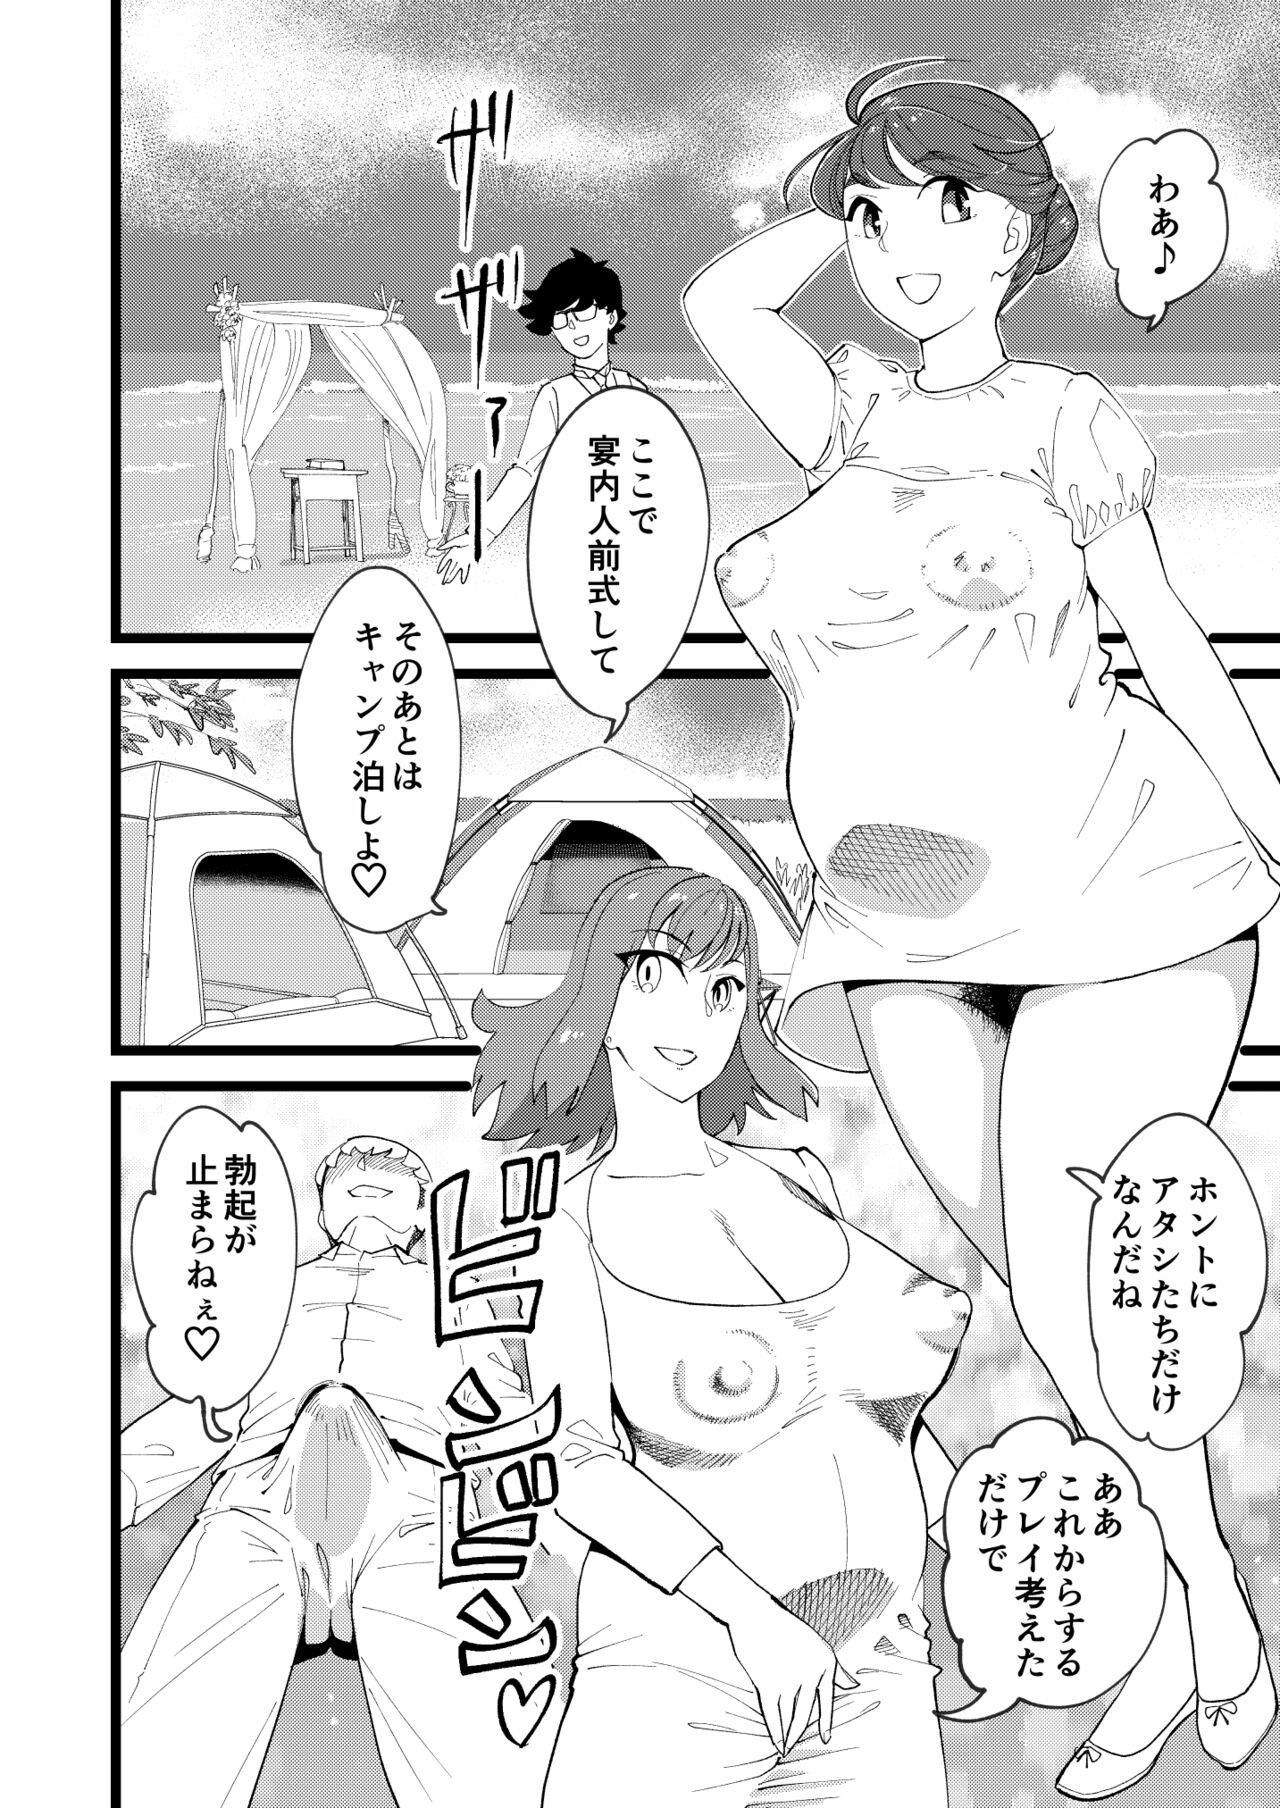 Facesitting Kyouyuu Kanojo 3rd Botebara Anal Sex - Original Cop - Page 3